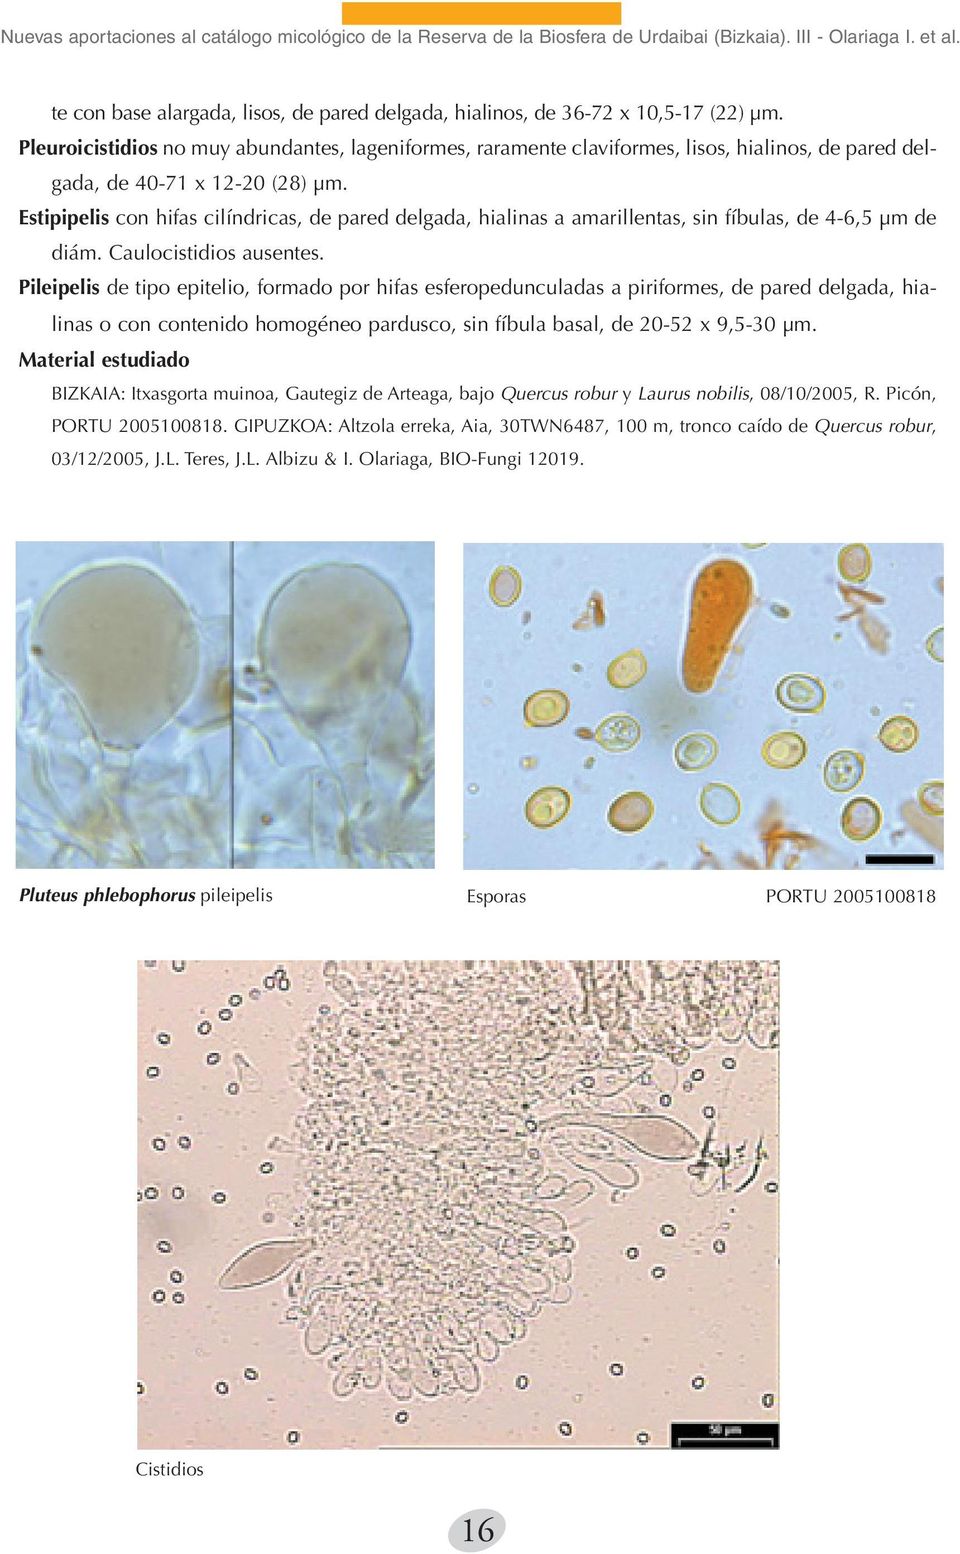 Pleuroicistidios no muy abundantes, lageniformes, raramente claviformes, lisos, hialinos, de pared delgada, de 40-71 x 12-20 (28) µm.